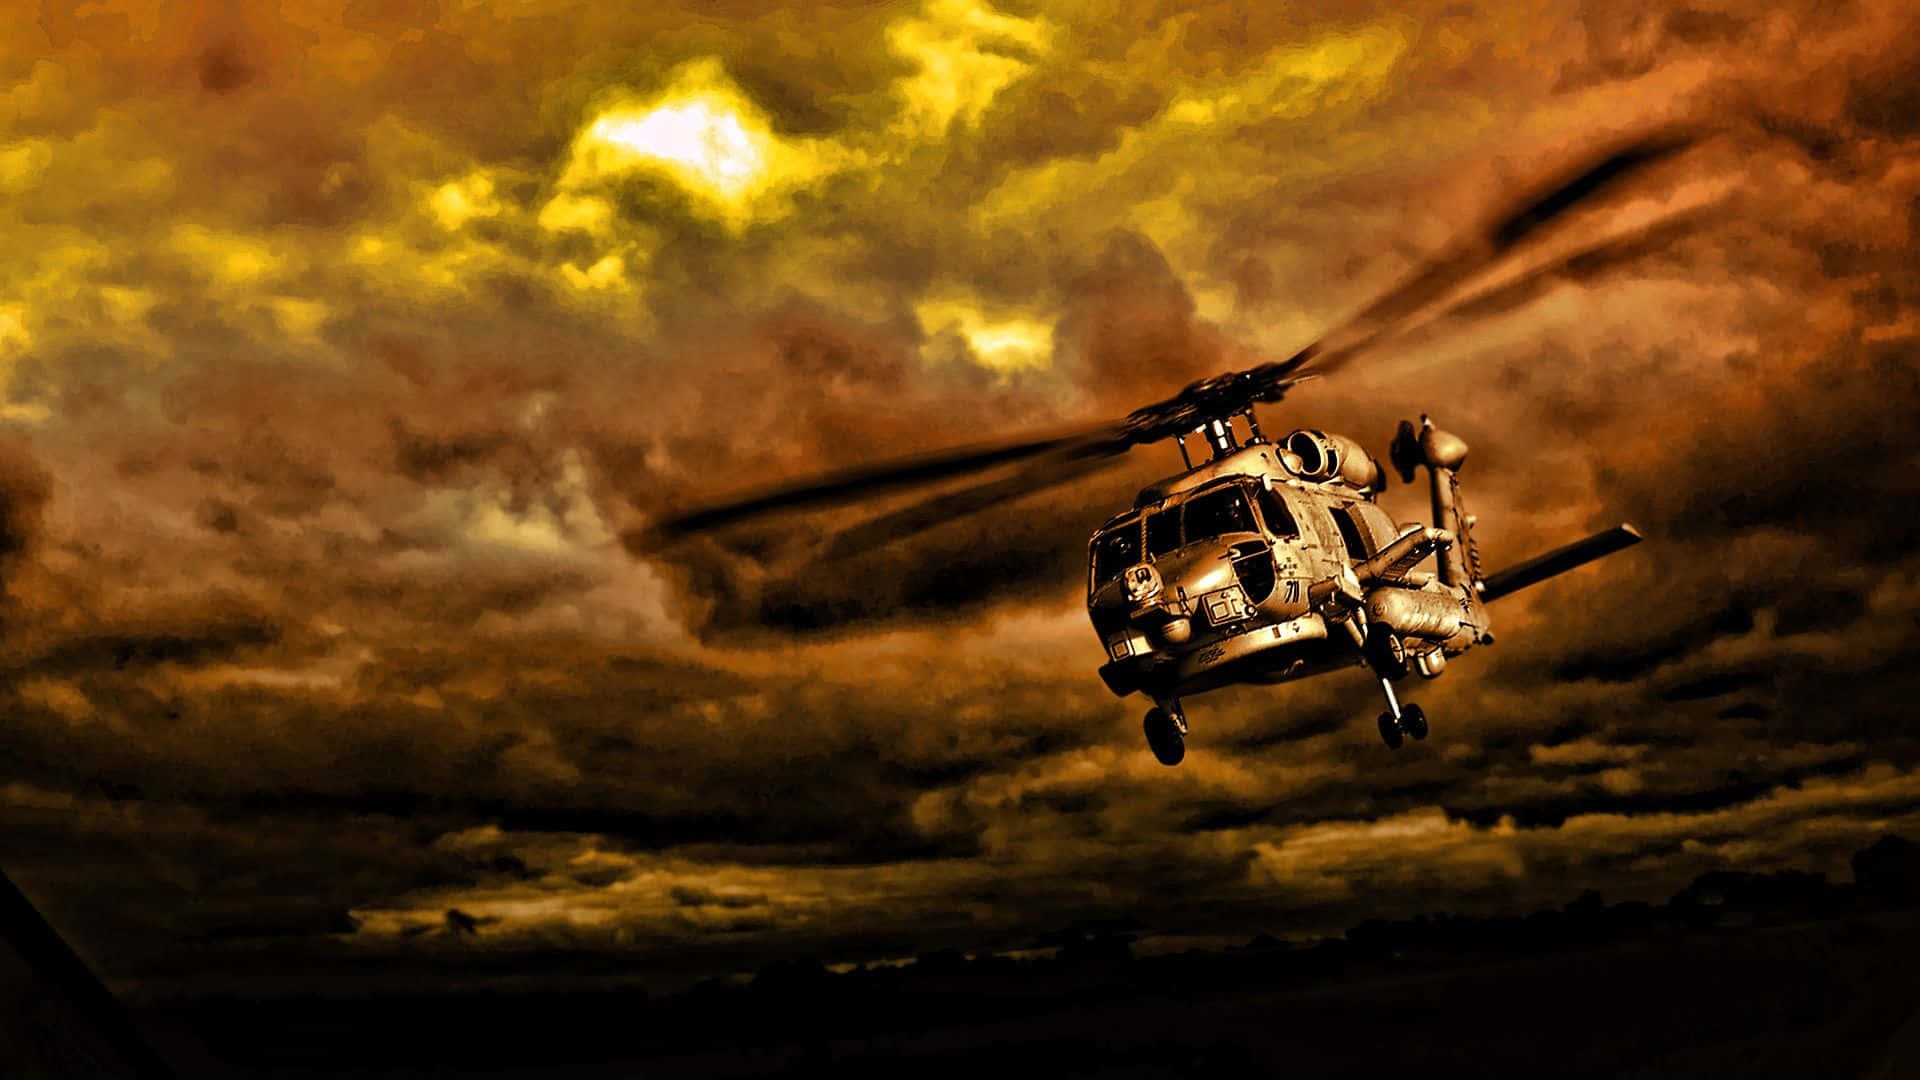 Fondode Pantalla De Atardecer En El Cielo Con Helicóptero Militar Para Escritorio. Fondo de pantalla